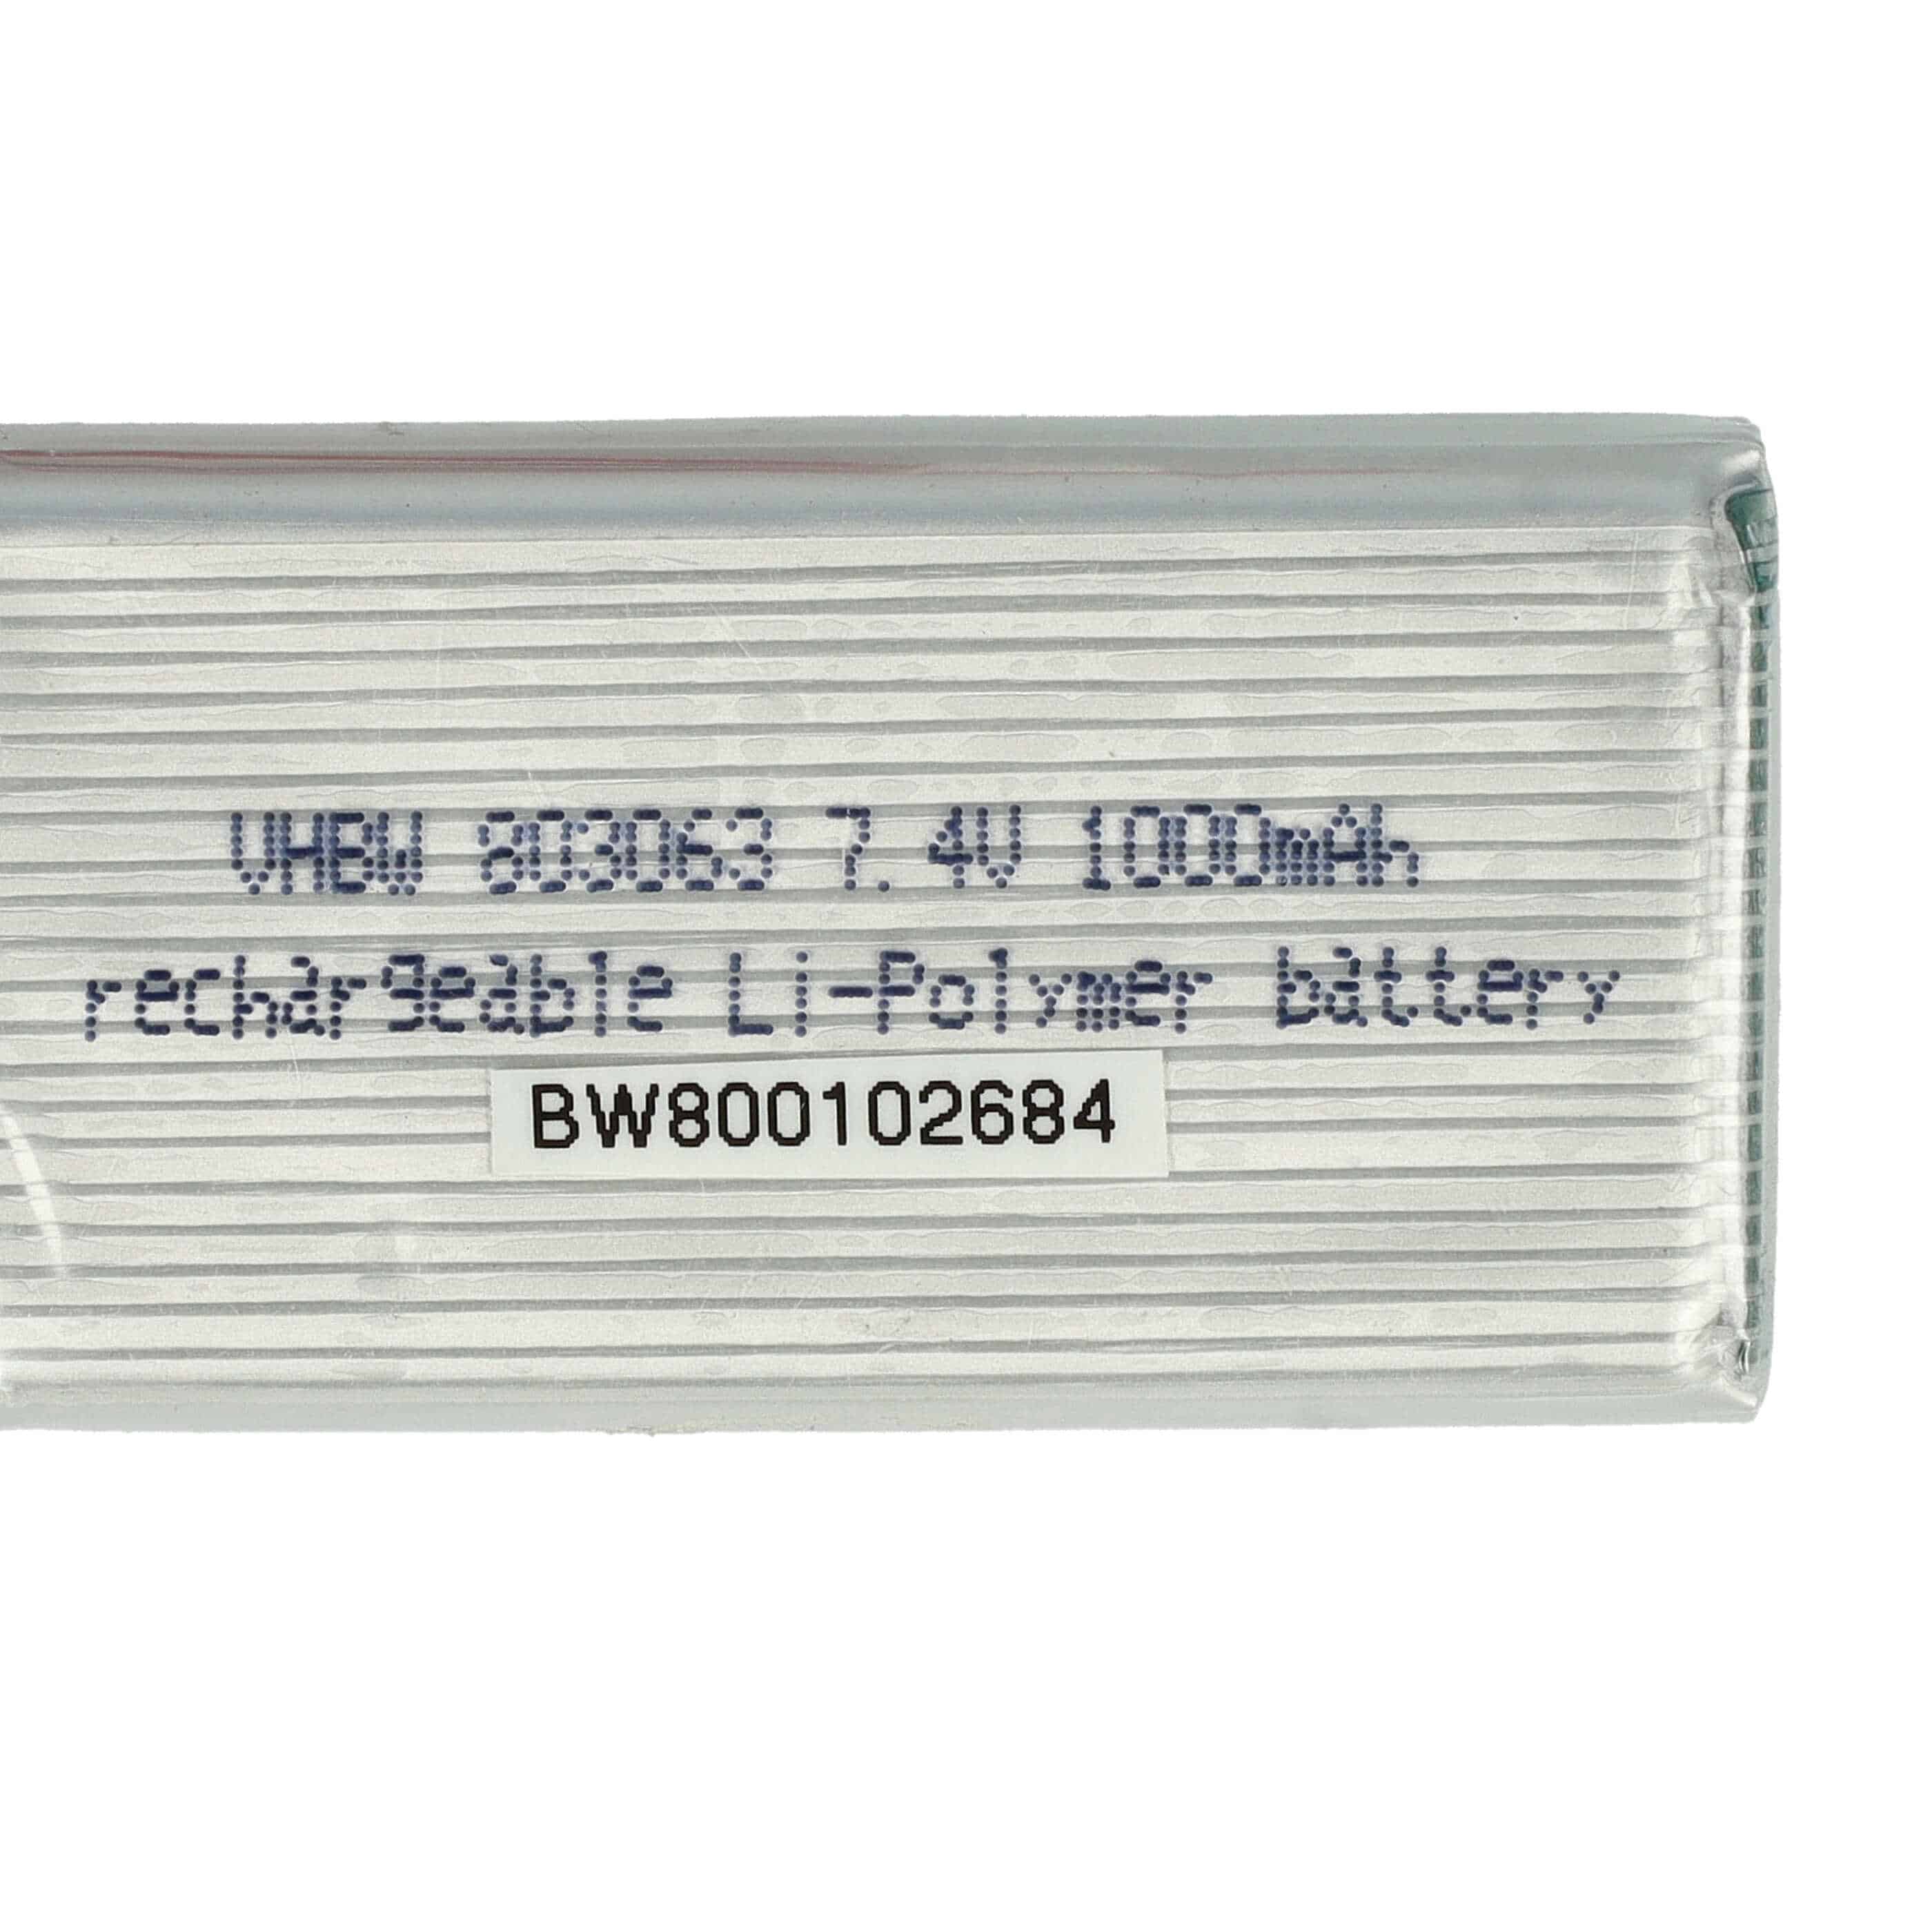 Batería para dispositivos modelismo - 1000 mAh 7,4 V Li-poli, JST-SYP-2P